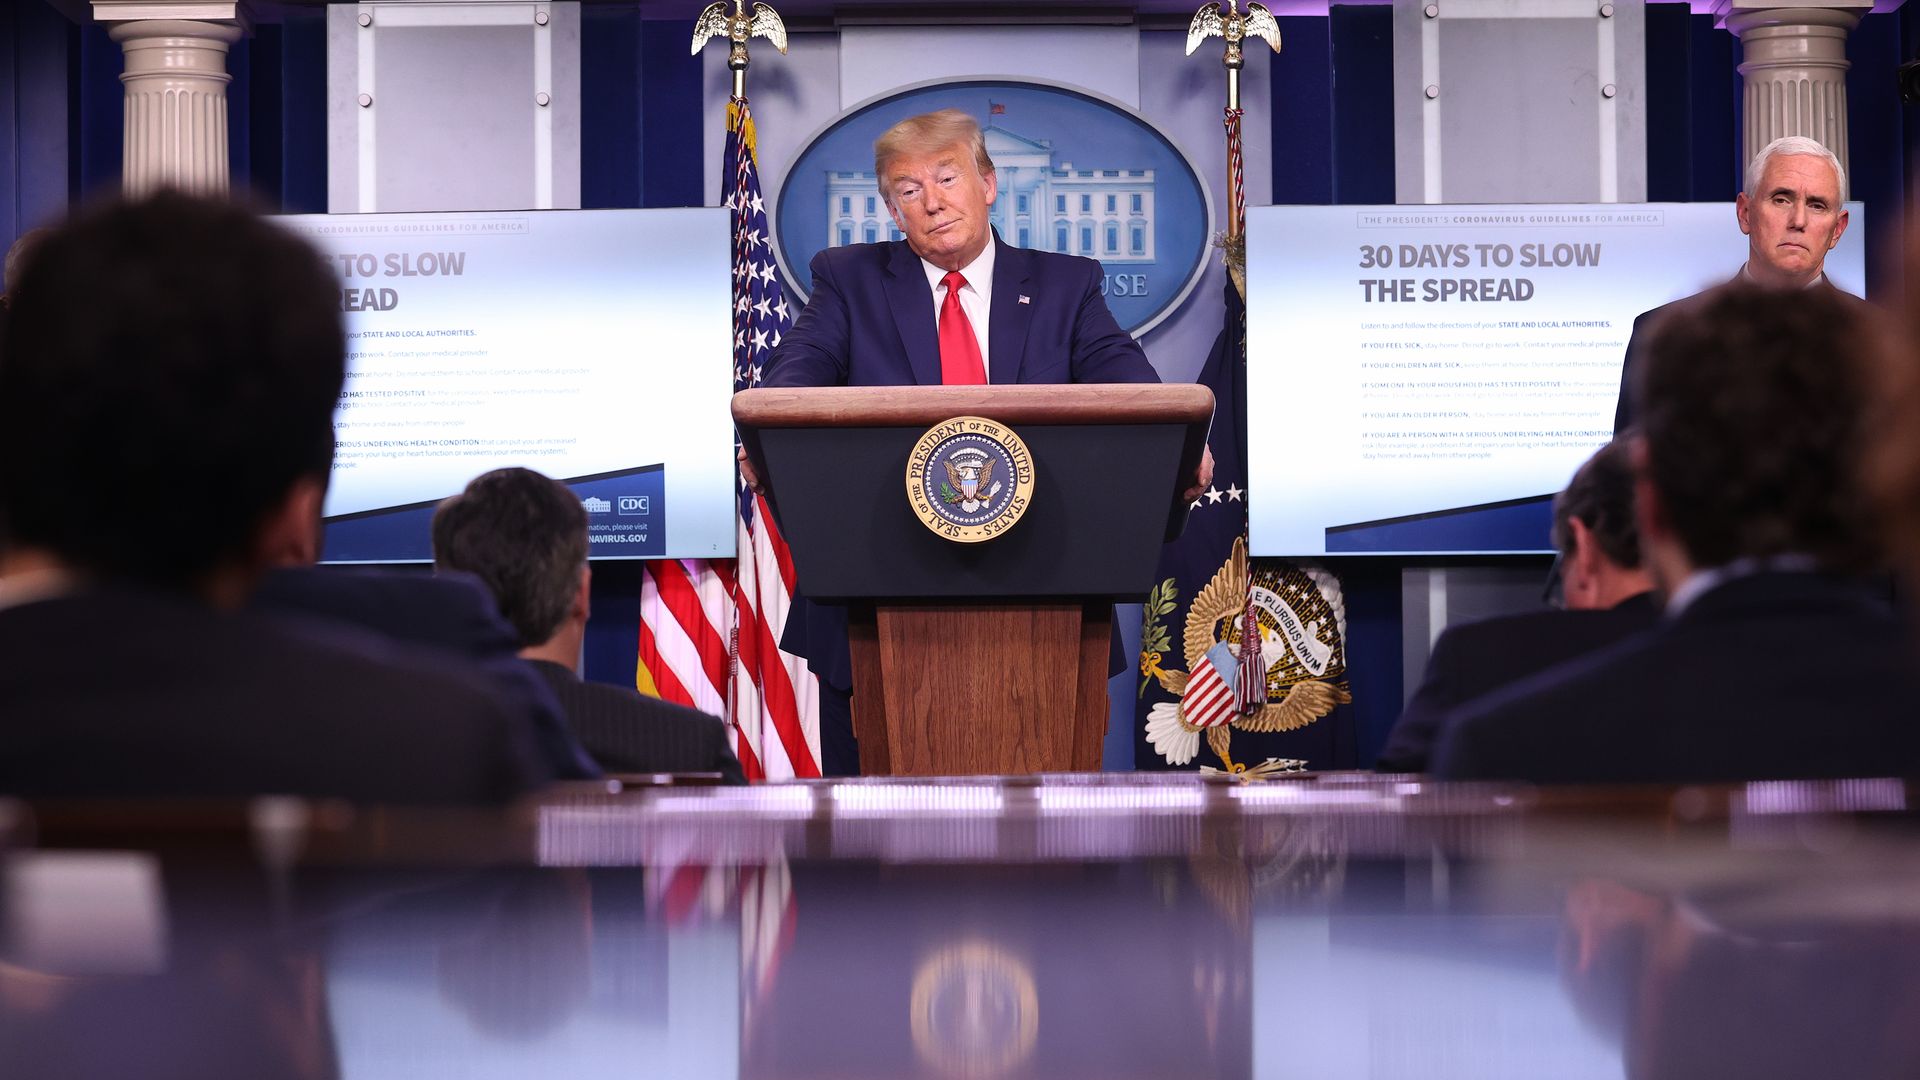 Trump at a press briefing